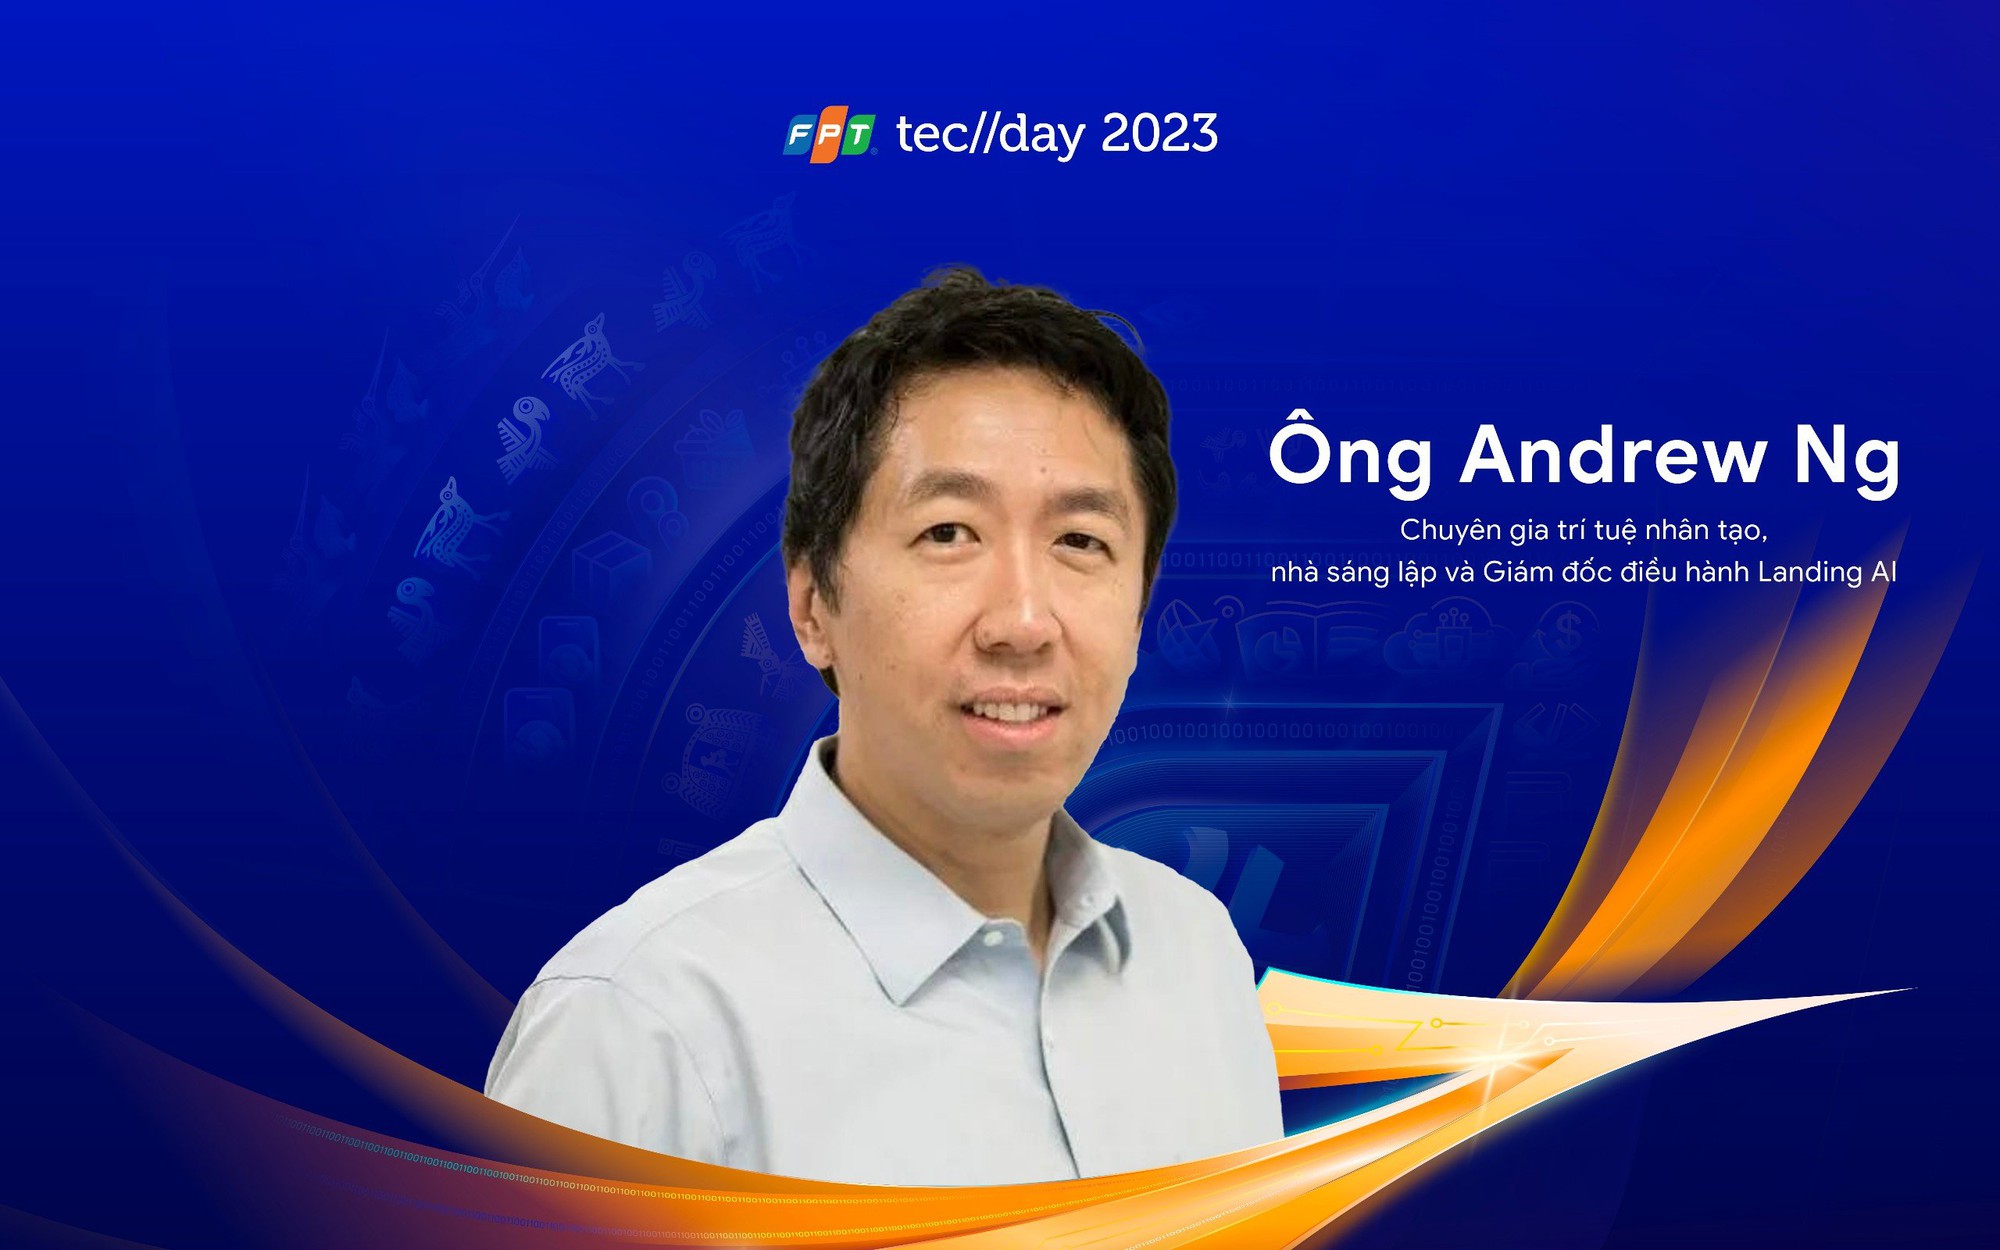 Ông Andrew Ng - Top 100 người ảnh hưởng AI toàn cầu là một trong những diễn giả tại FPT Techday 2023 - Hình của FPT